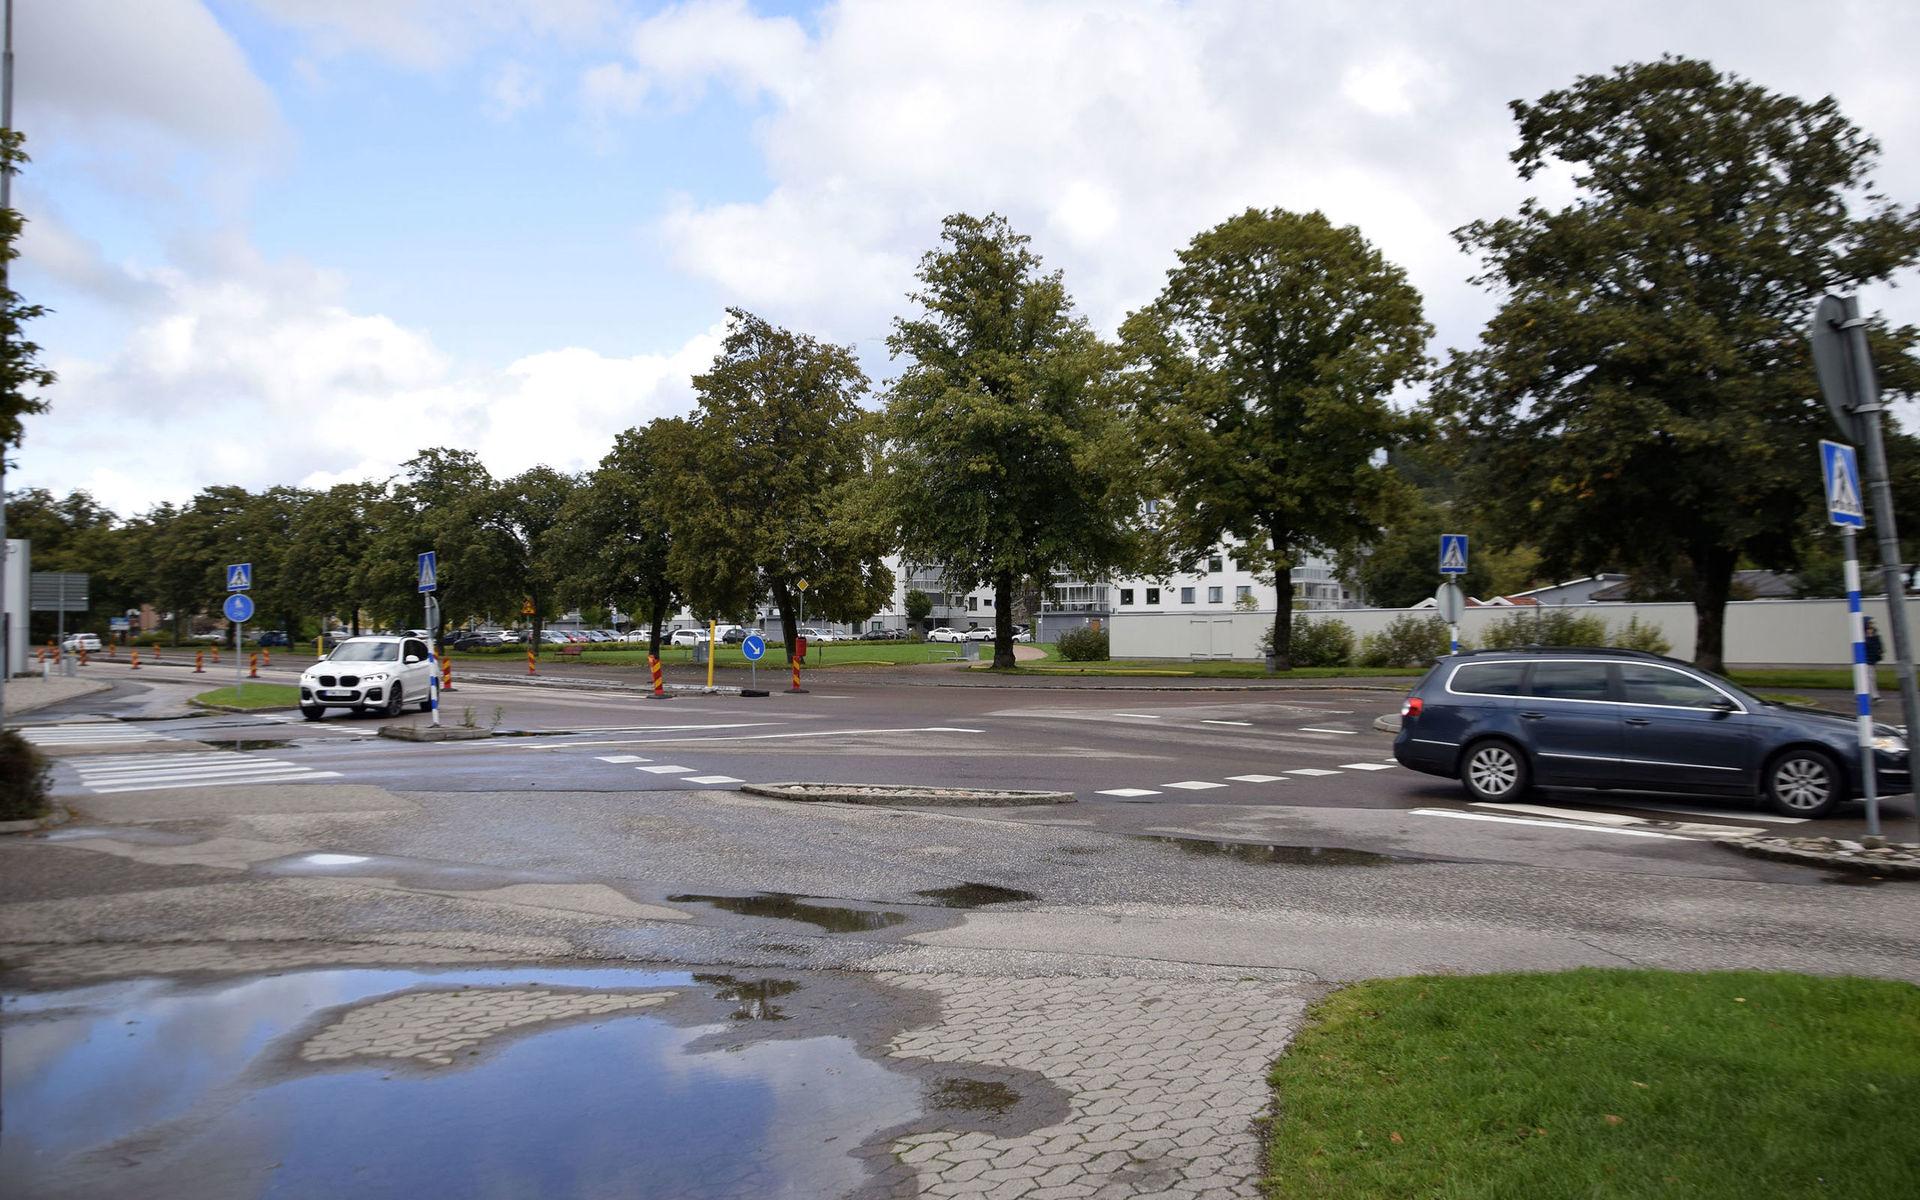 Korsningen Junogatan Göteborgsvägen i närheten av ICA Kvantum trafik bilar biltrafik 